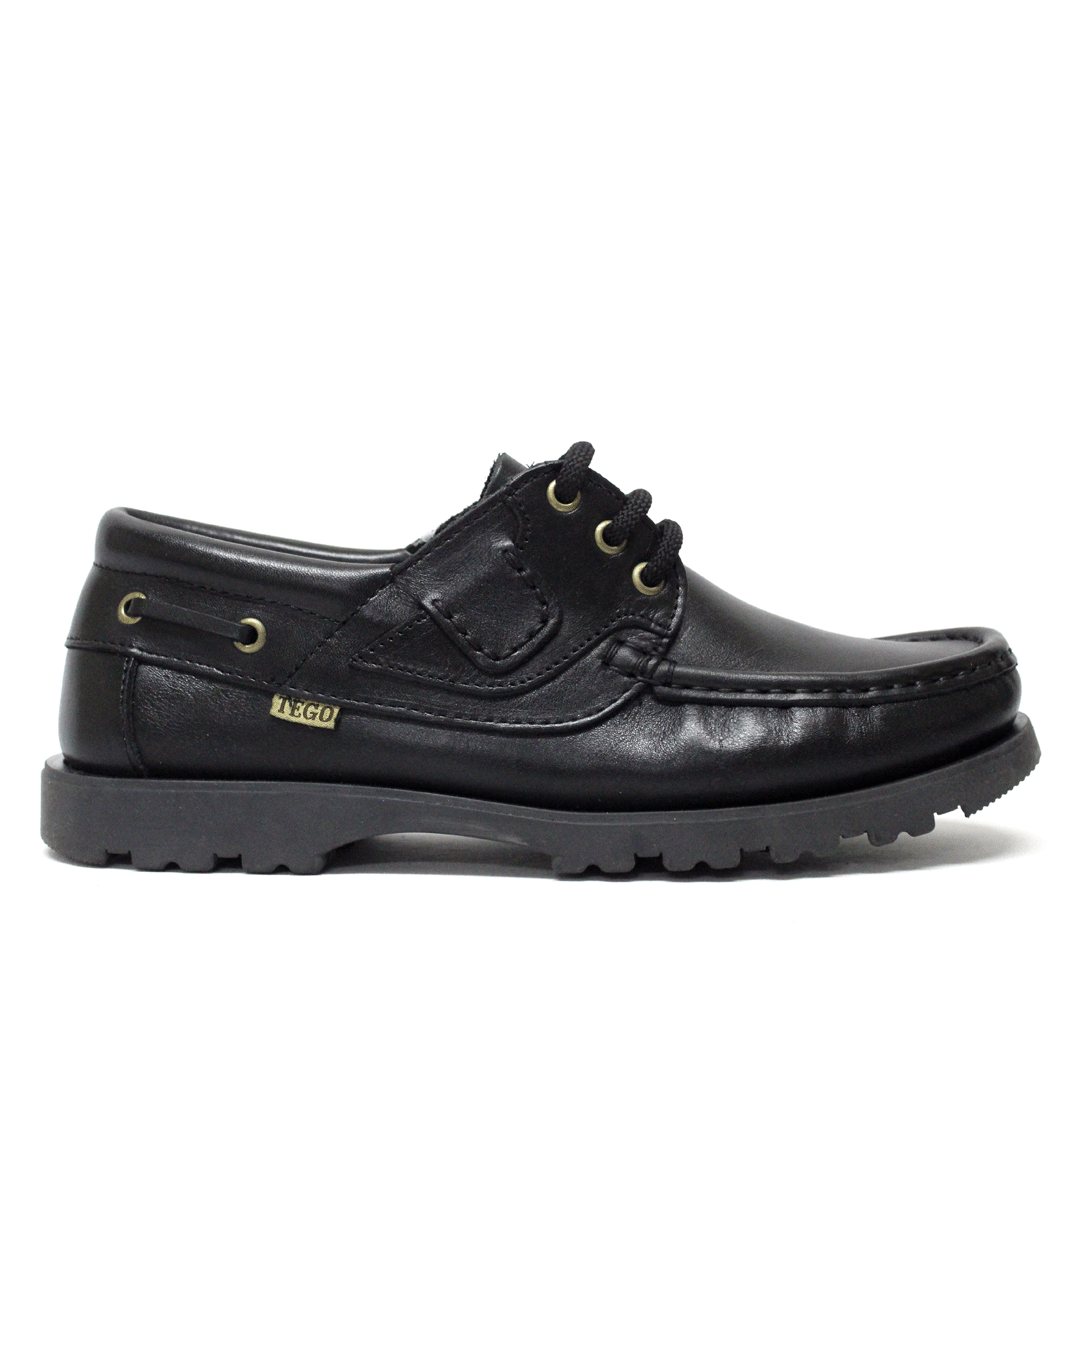 TEGO Black Leather Shoe